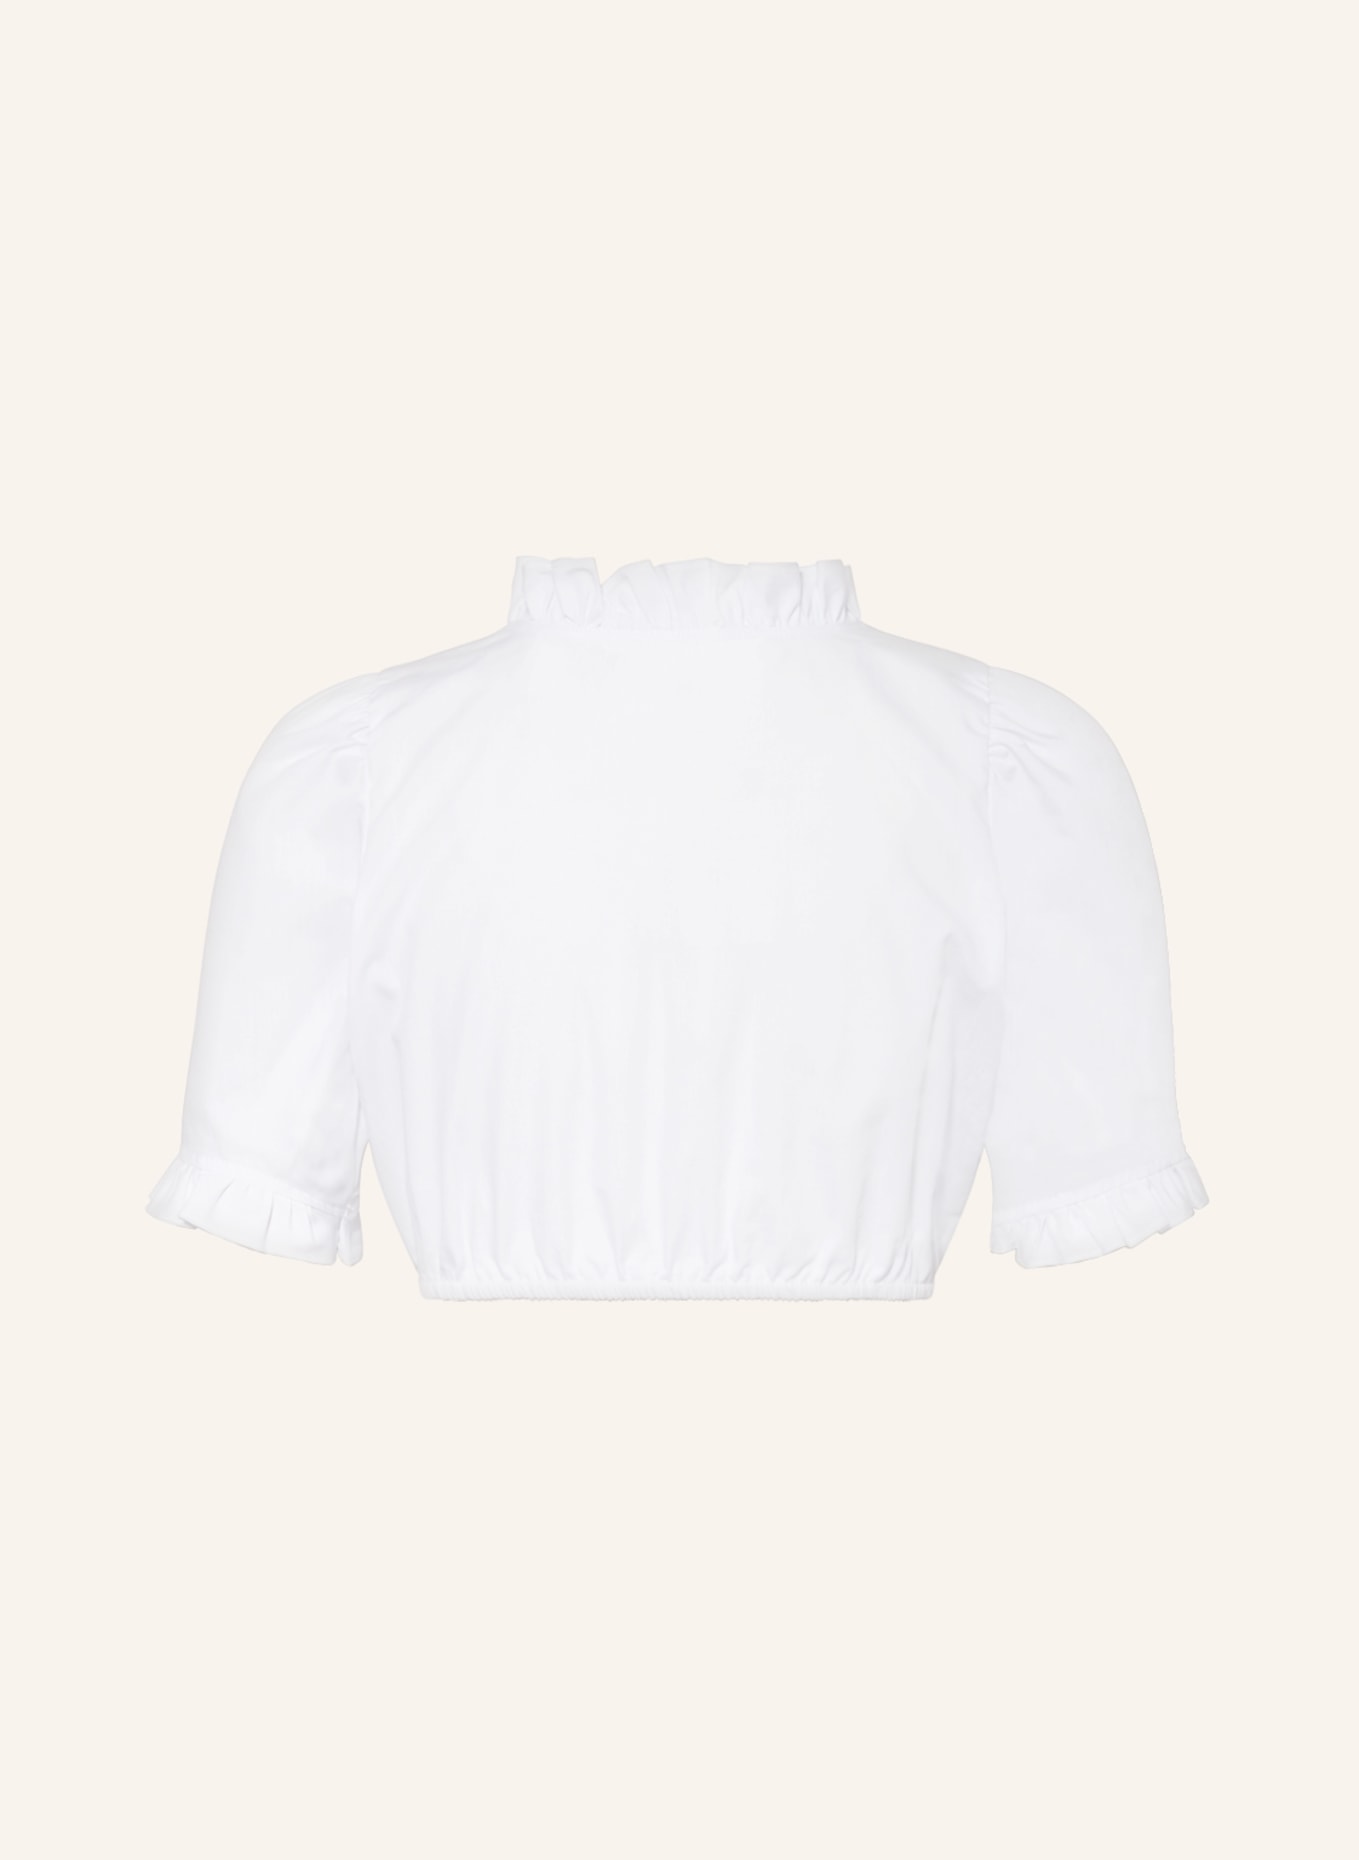 KRÜGER Dirndl blouse CLASSICO, Color: WHITE (Image 2)